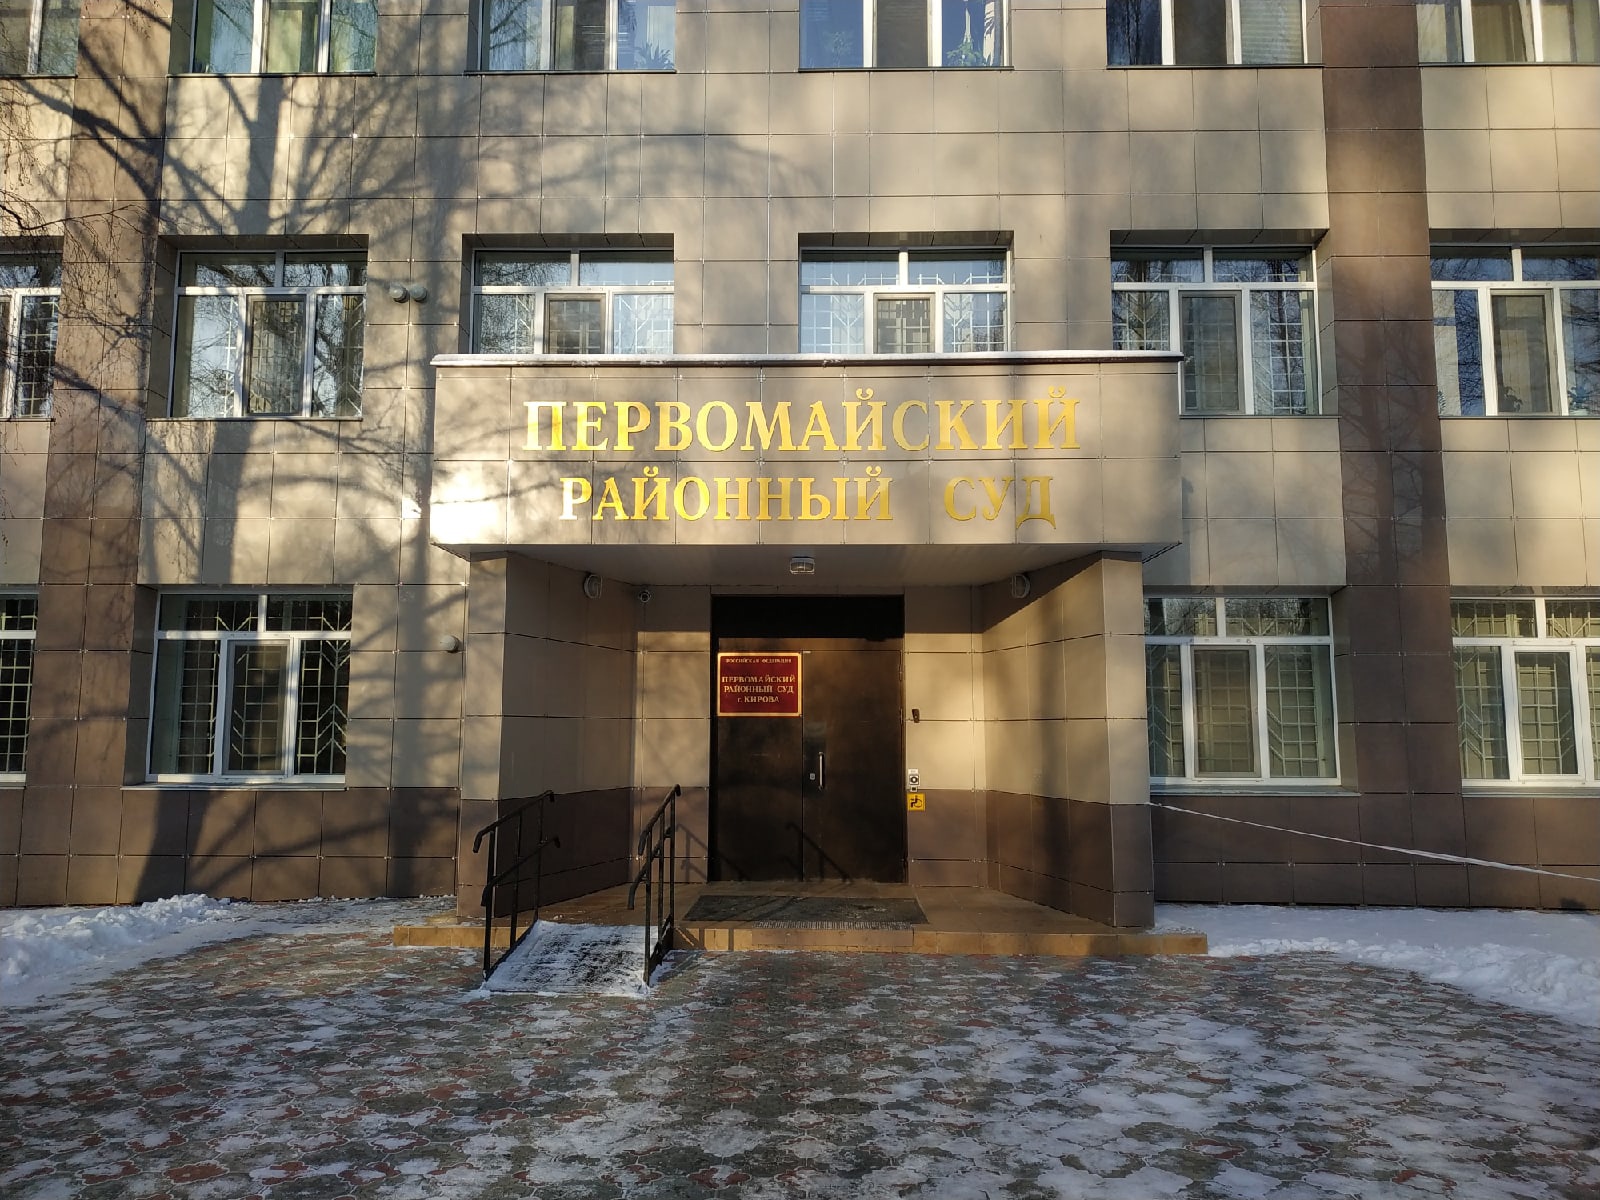 В суды Кирова требуются сотрудники